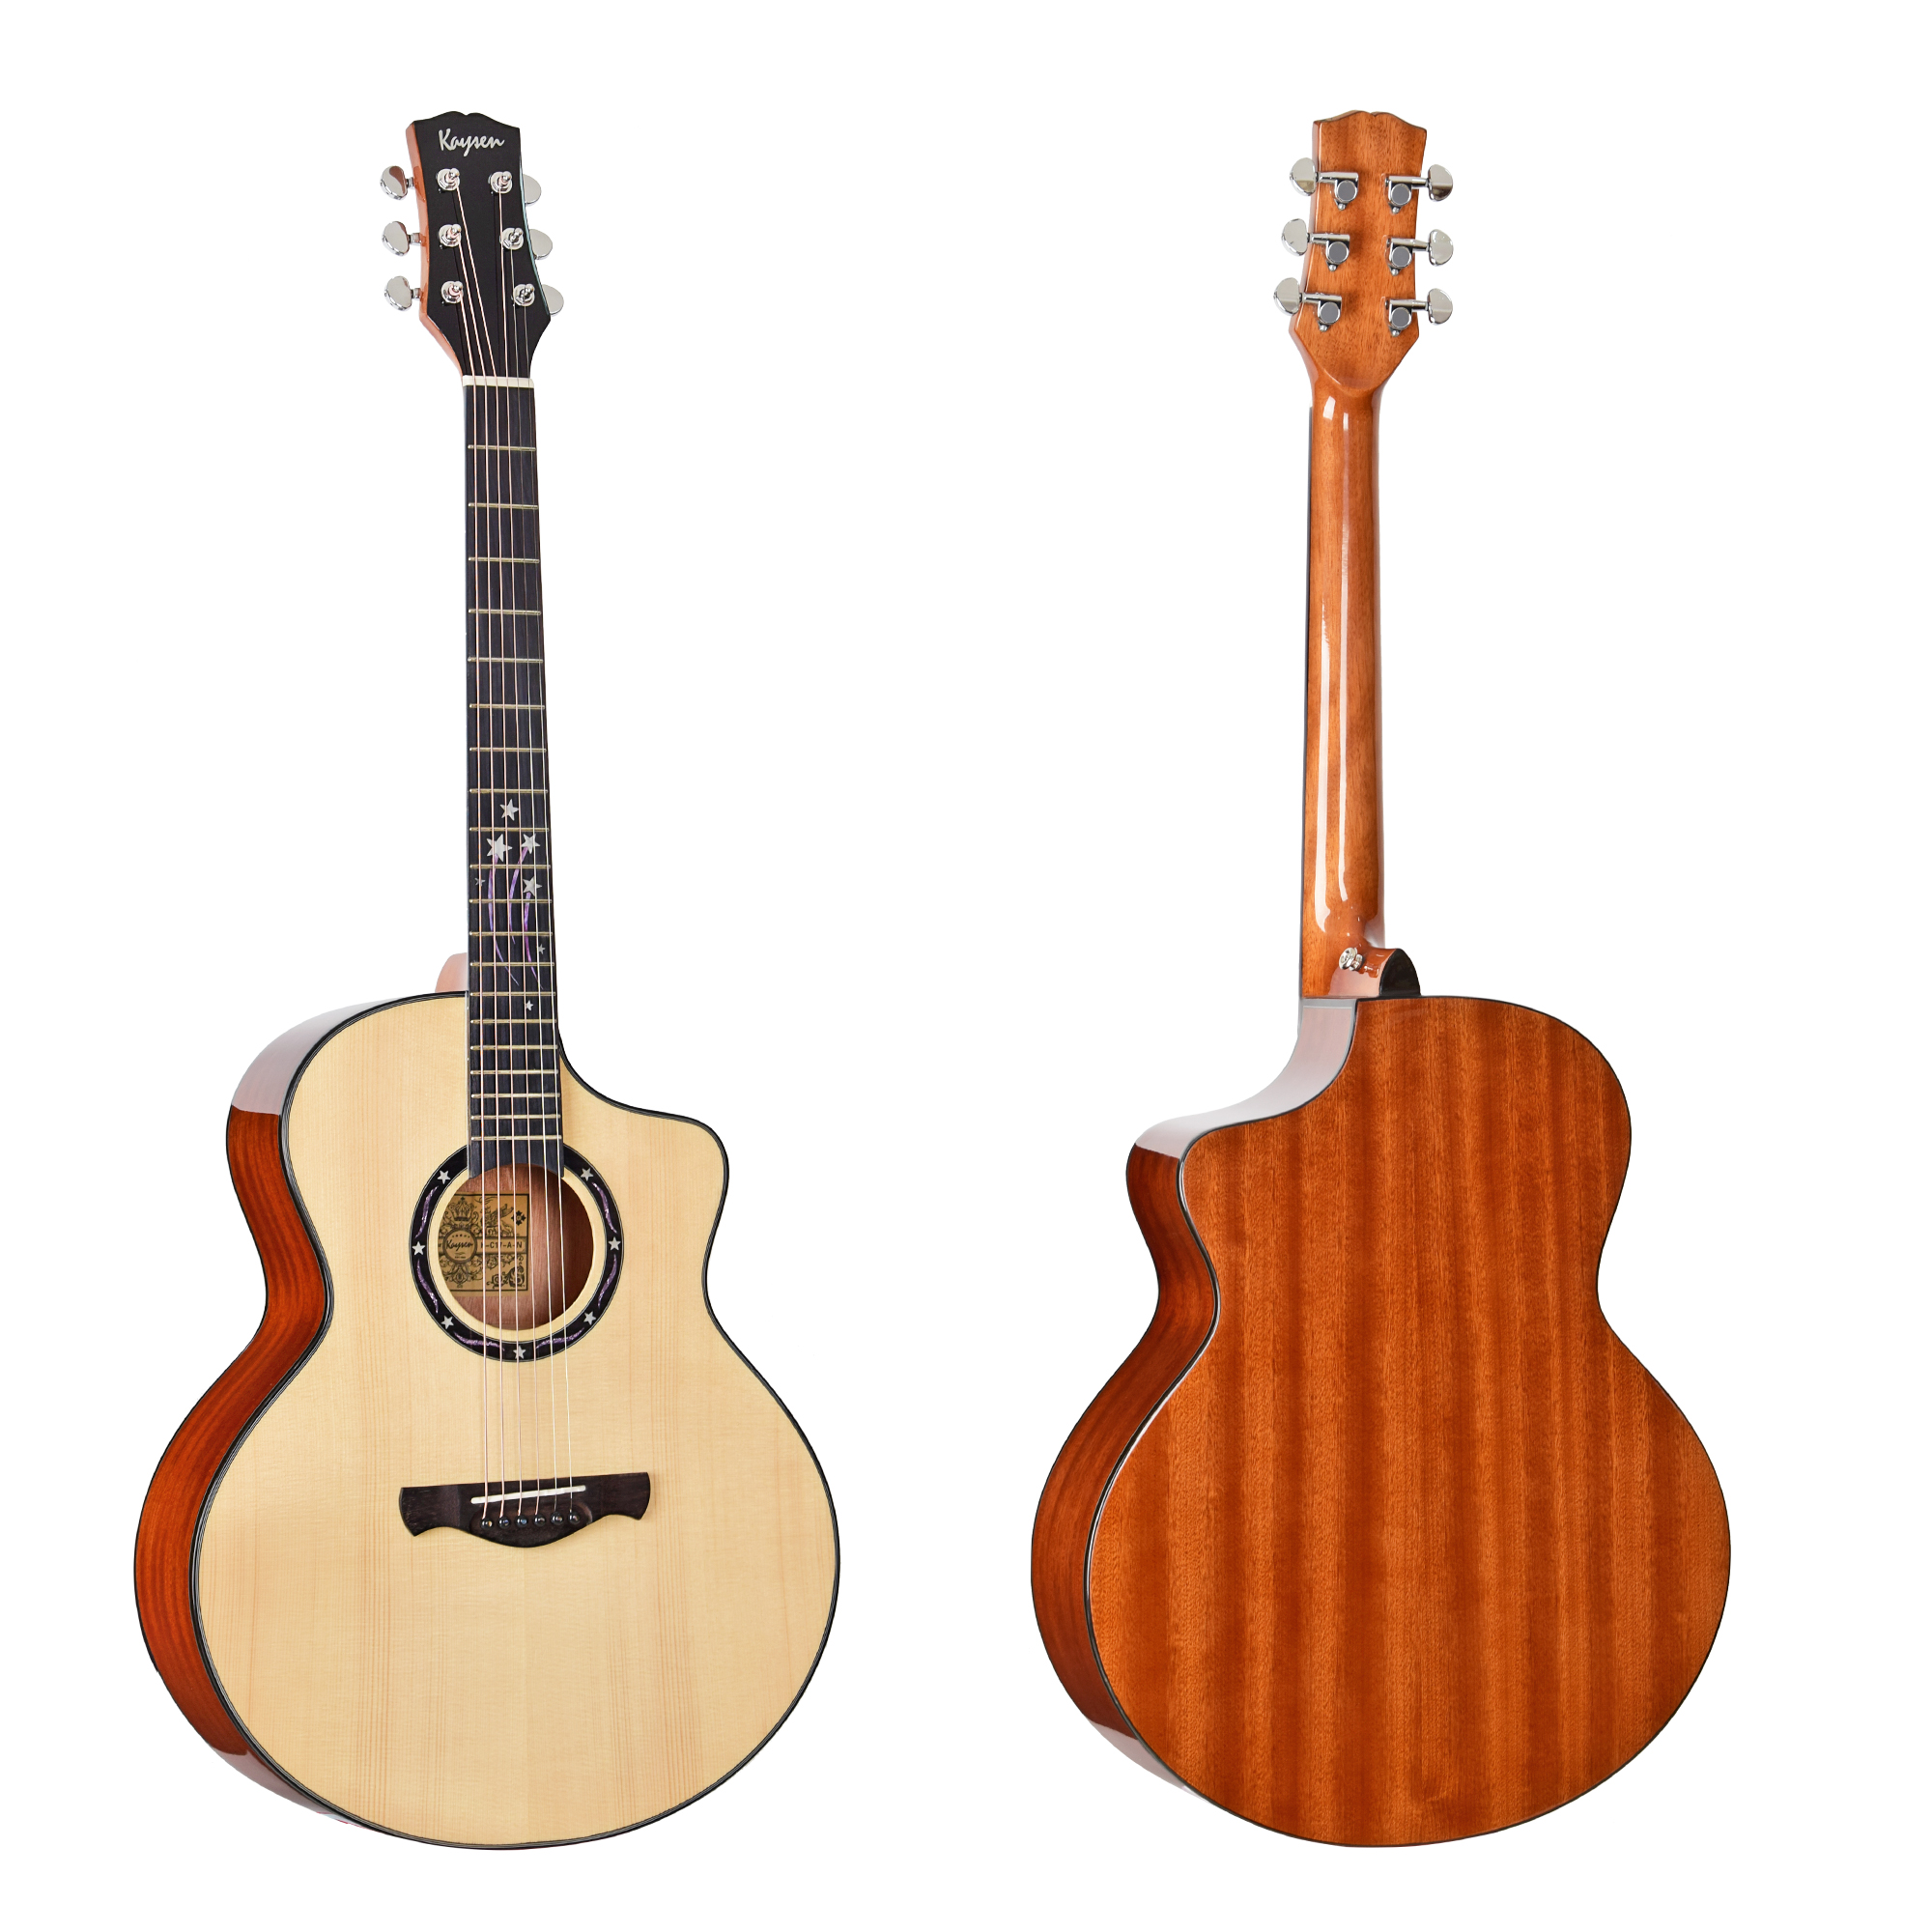 גיטרה אקוסטית מוגברת K-Acoustic guitar solid wood top